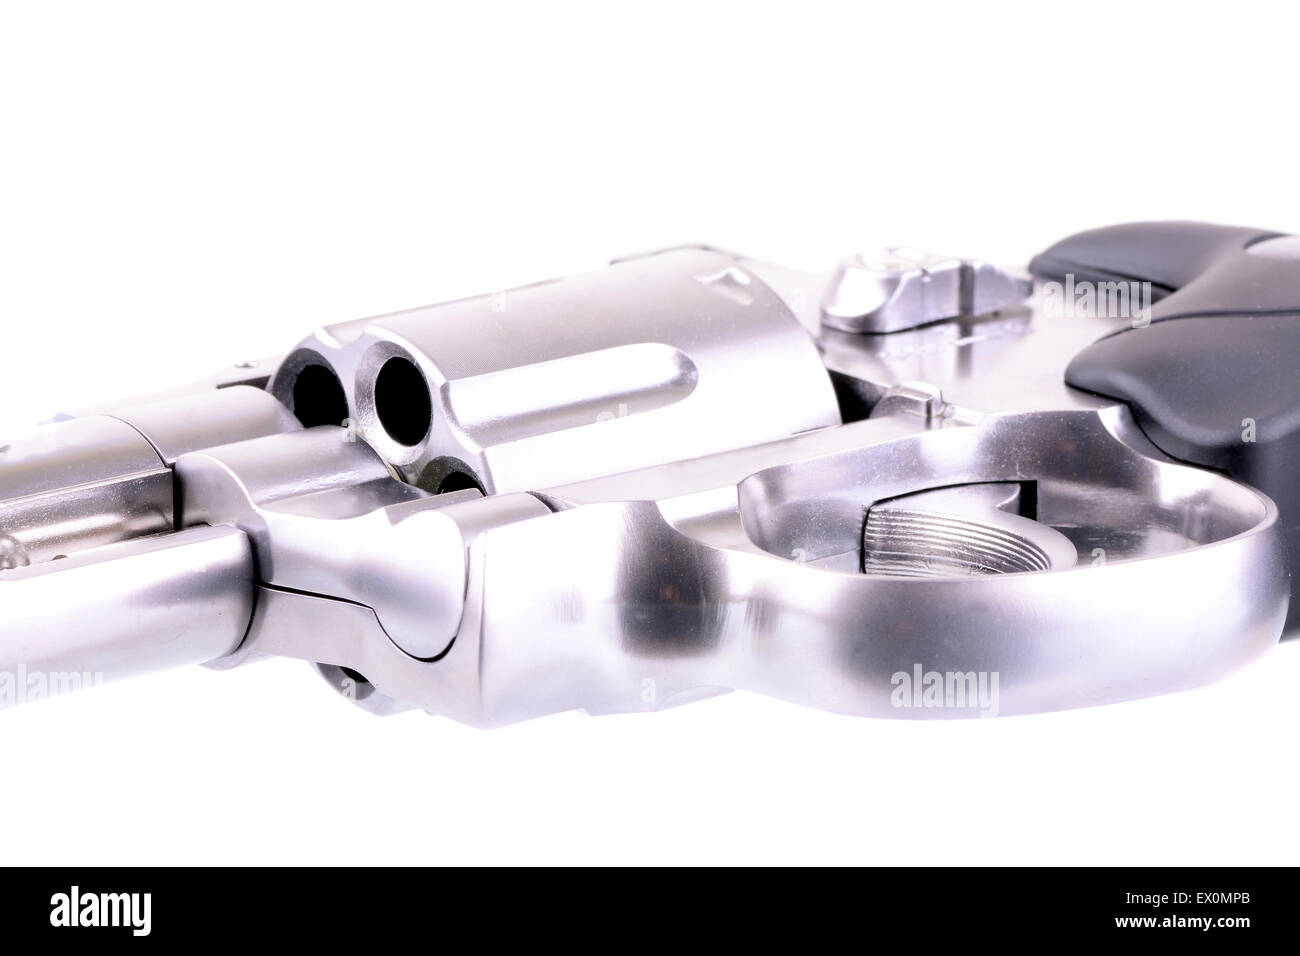 Ripresa macro di un inossidabile steele revolver Foto Stock